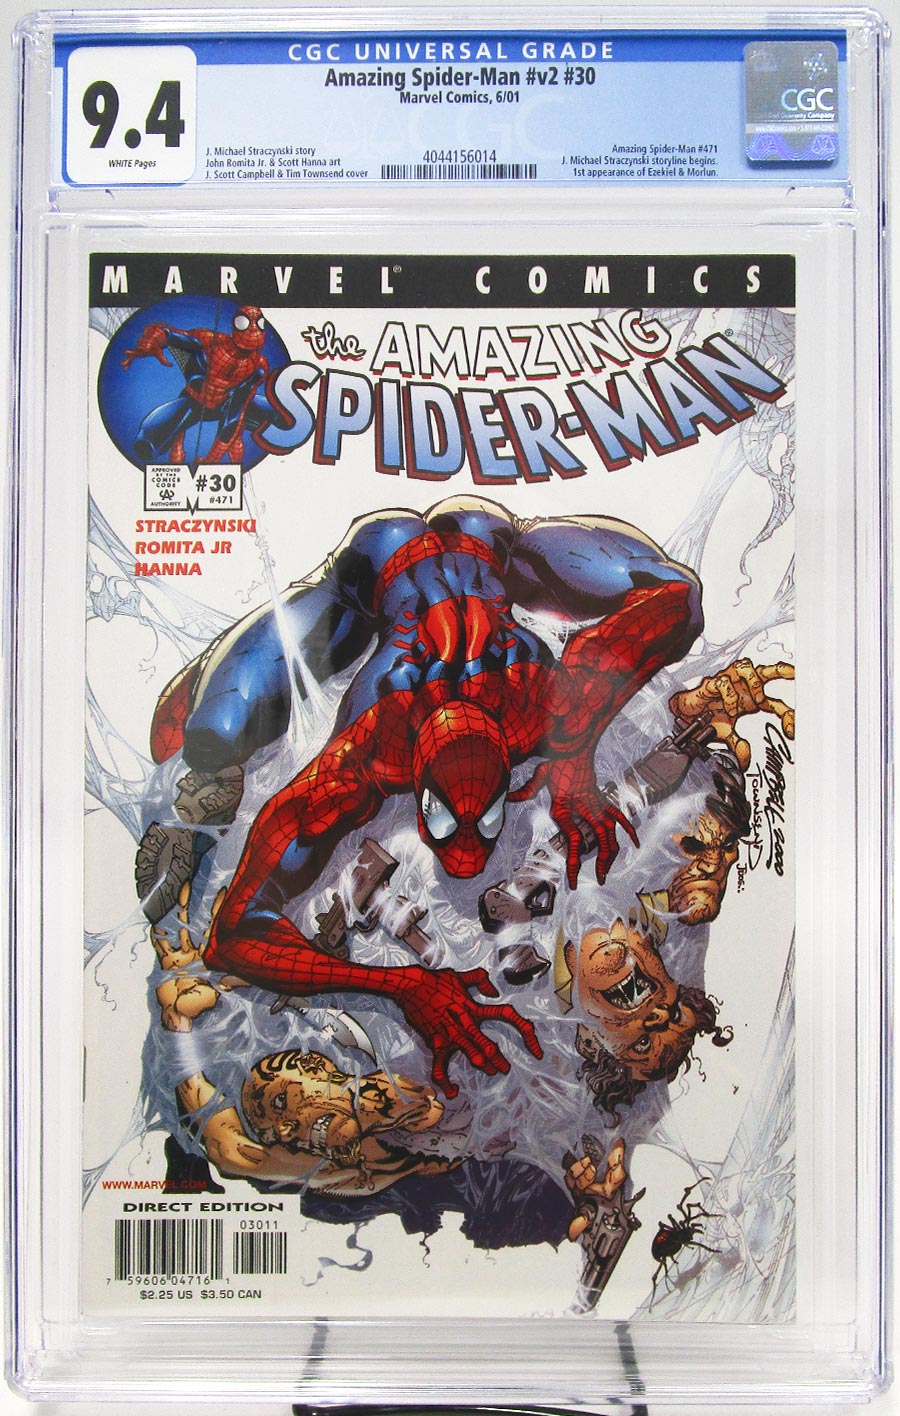 Amazing Spider-Man Vol 2 #30 Cover C CGC 9.4